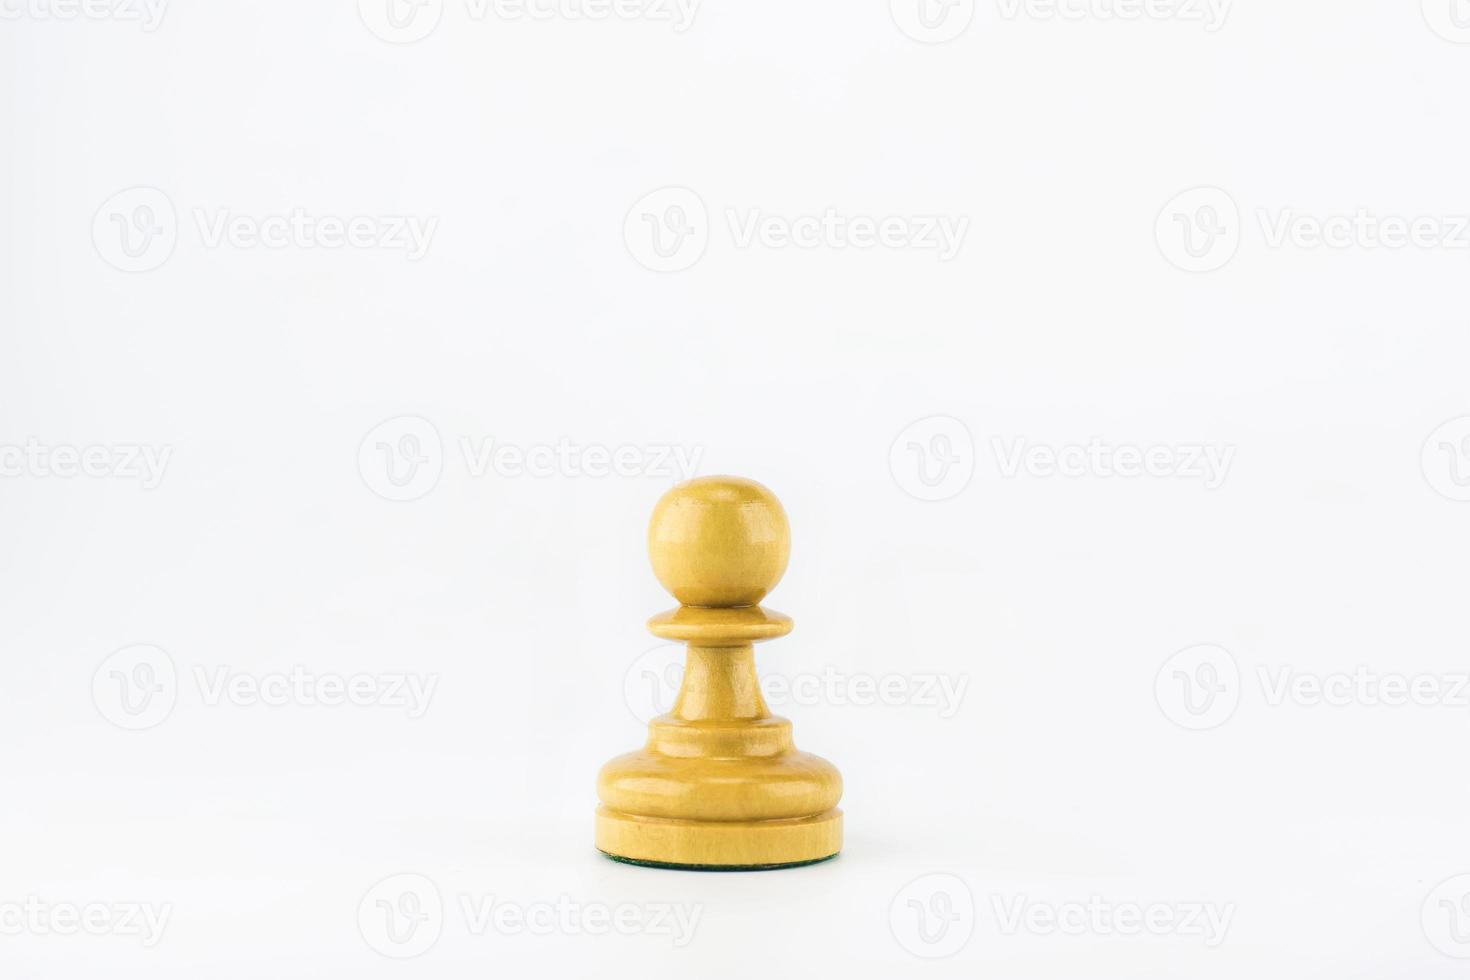 figura de ajedrez sobre fondo blanco foto